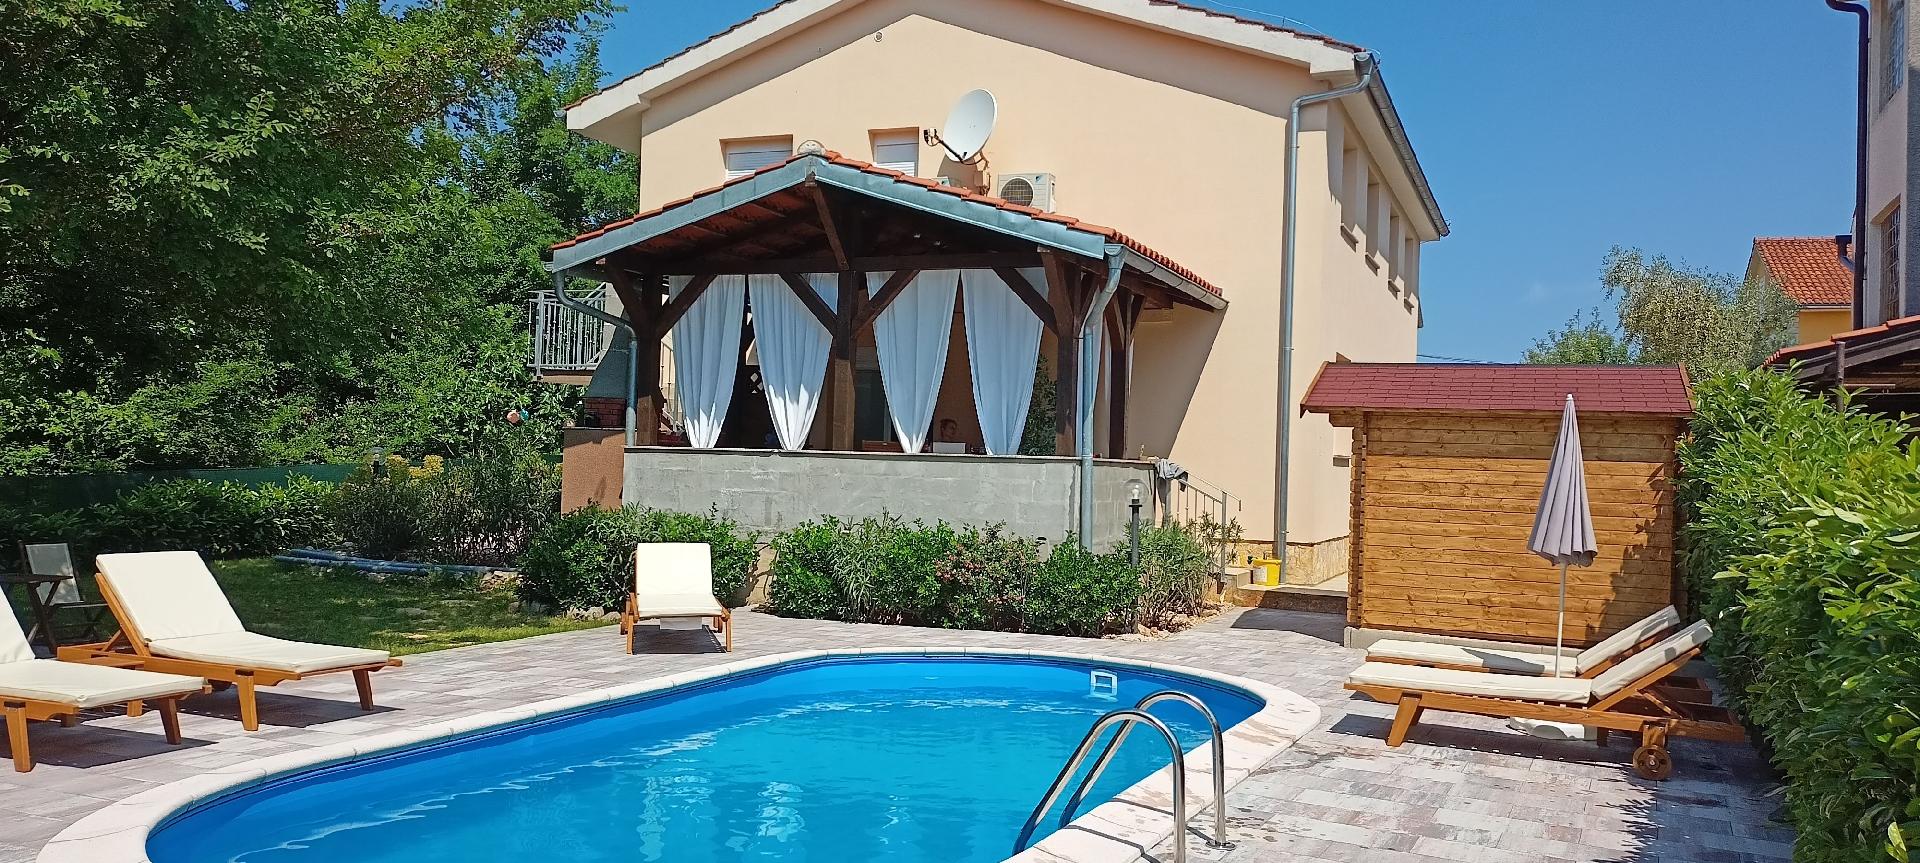 Ferienwohnung in ?ilo mit Kleinem Balkon  in Kroatien